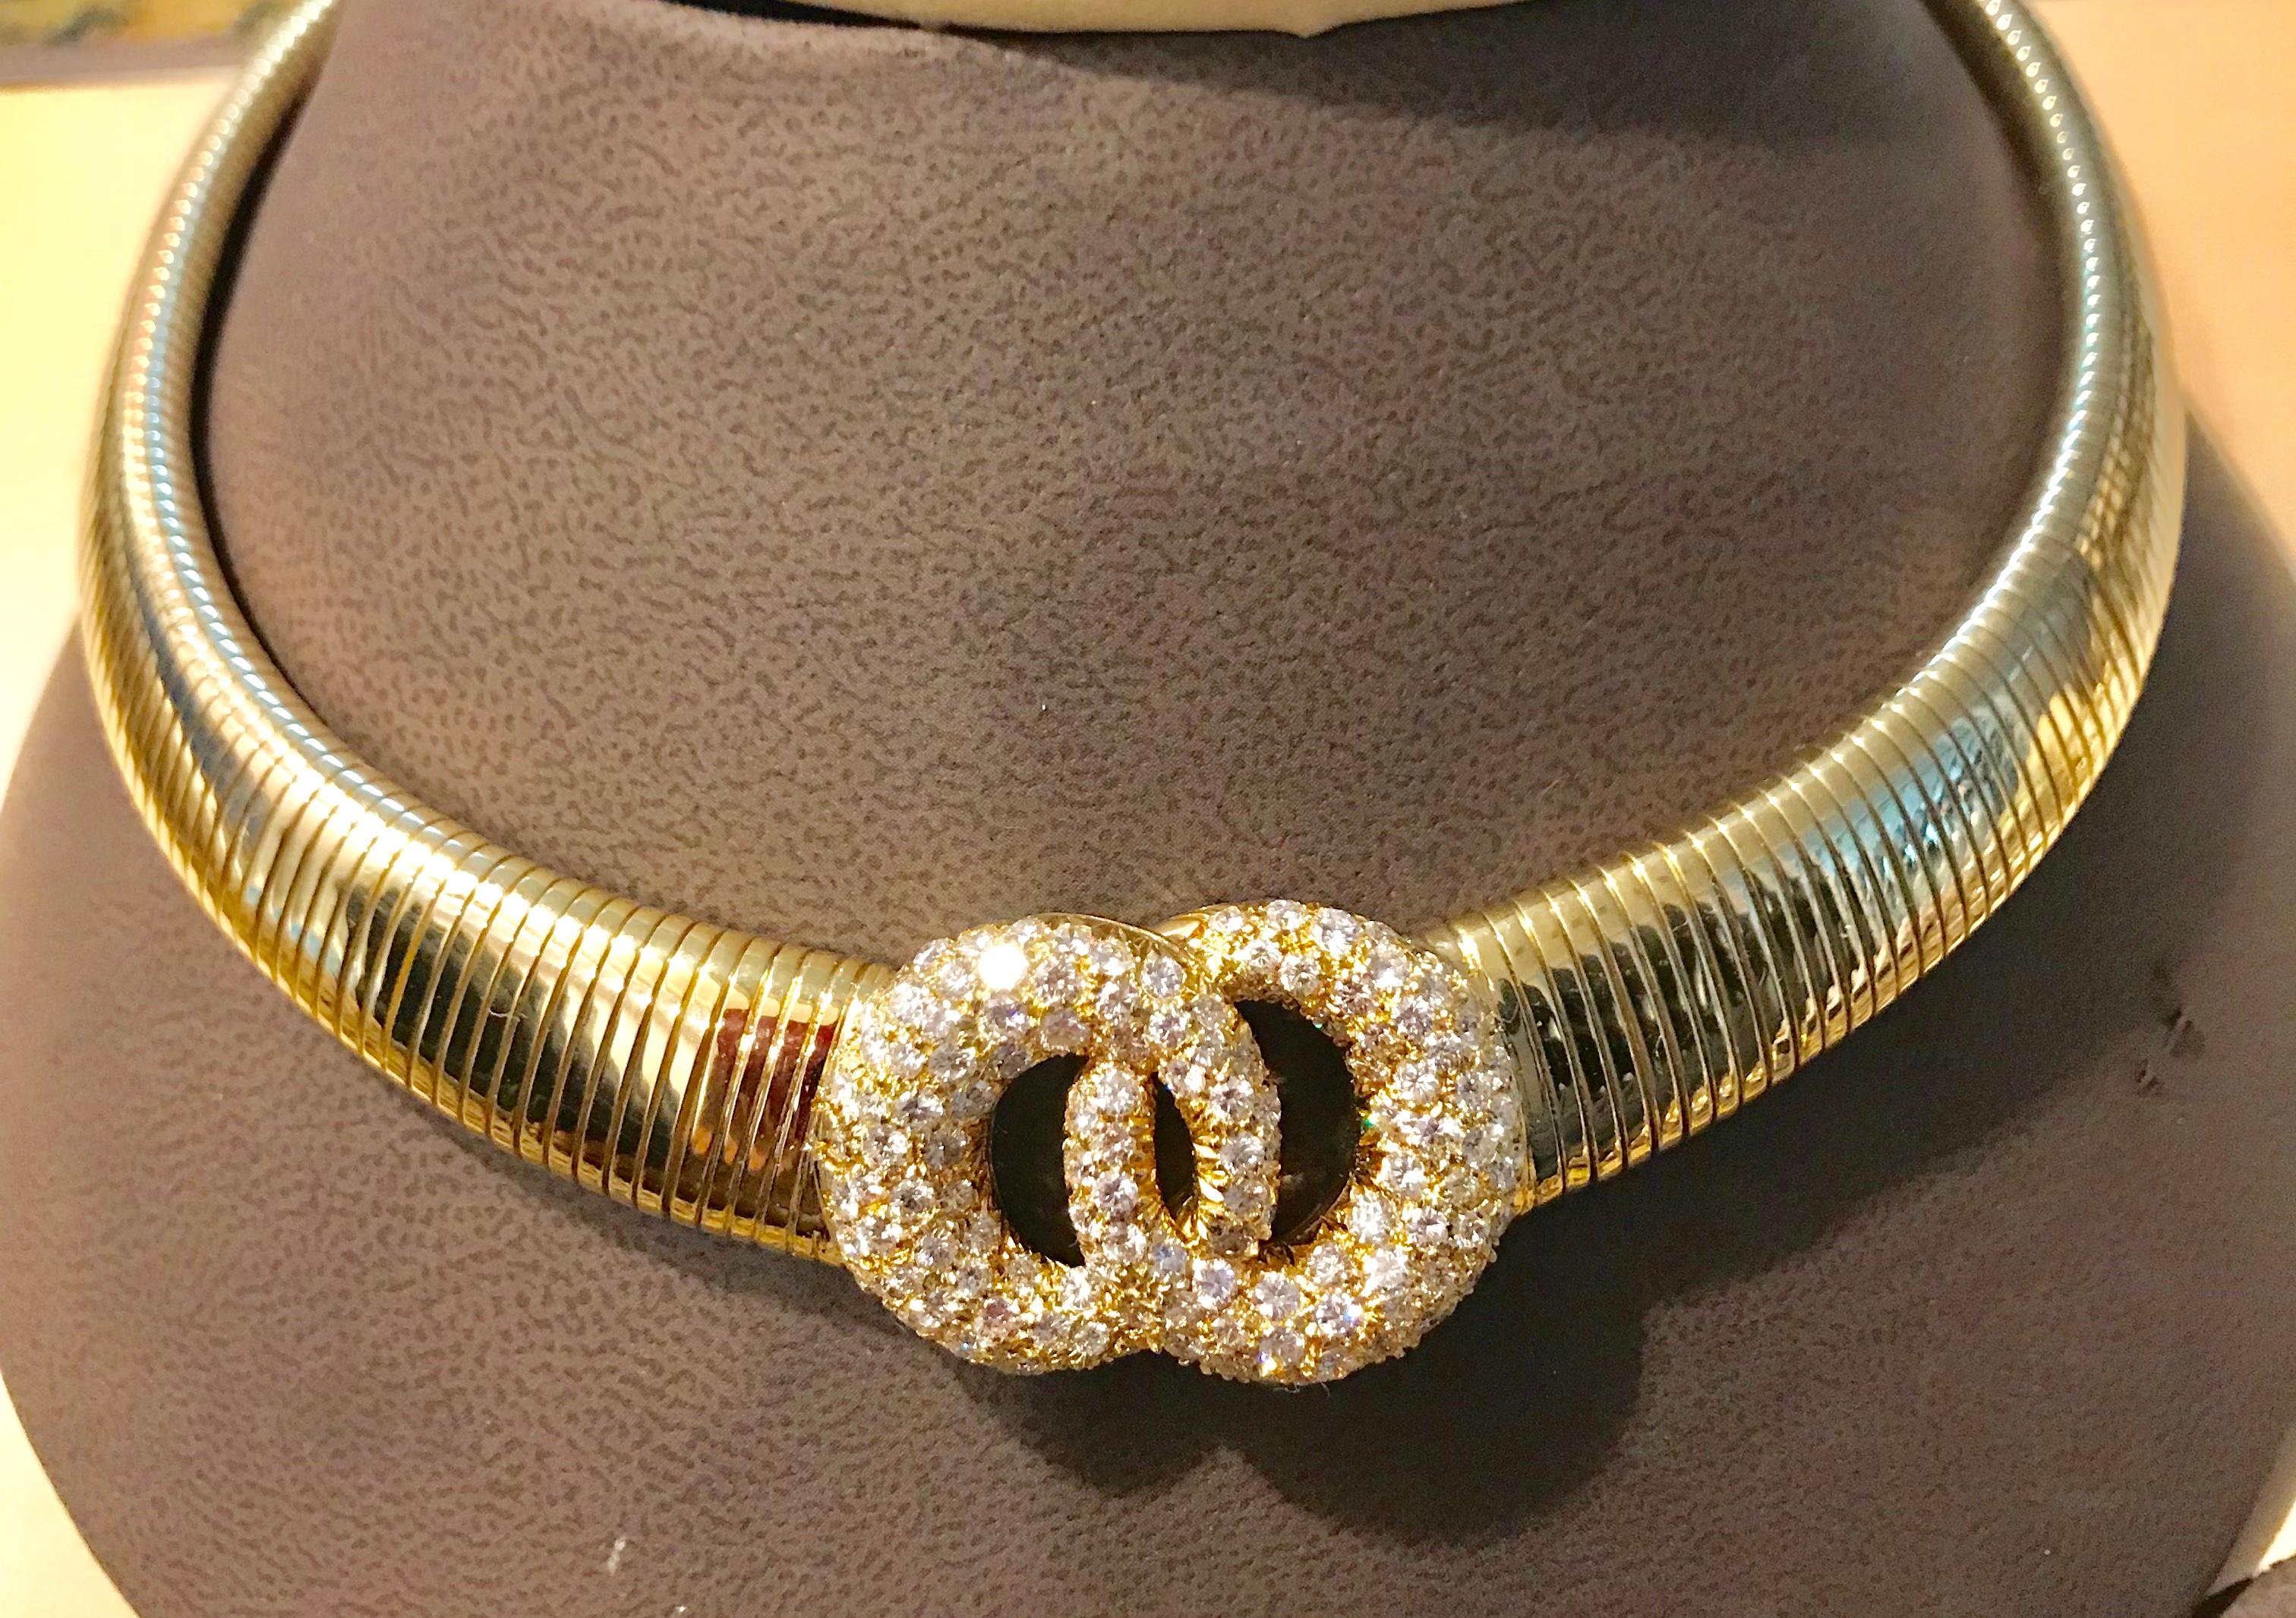 Diese biegsame Halskette von Van Cleef & Arpels ist mit opulenten weißen Diamanten besetzt und wiegt etwa 6  Karat ,  alle fein säuberlich montiert in 
18 Karat Gelbgold. Das Gewicht der Halskette beträgt 100 g.
Die mittlere Plakette ist mit runden